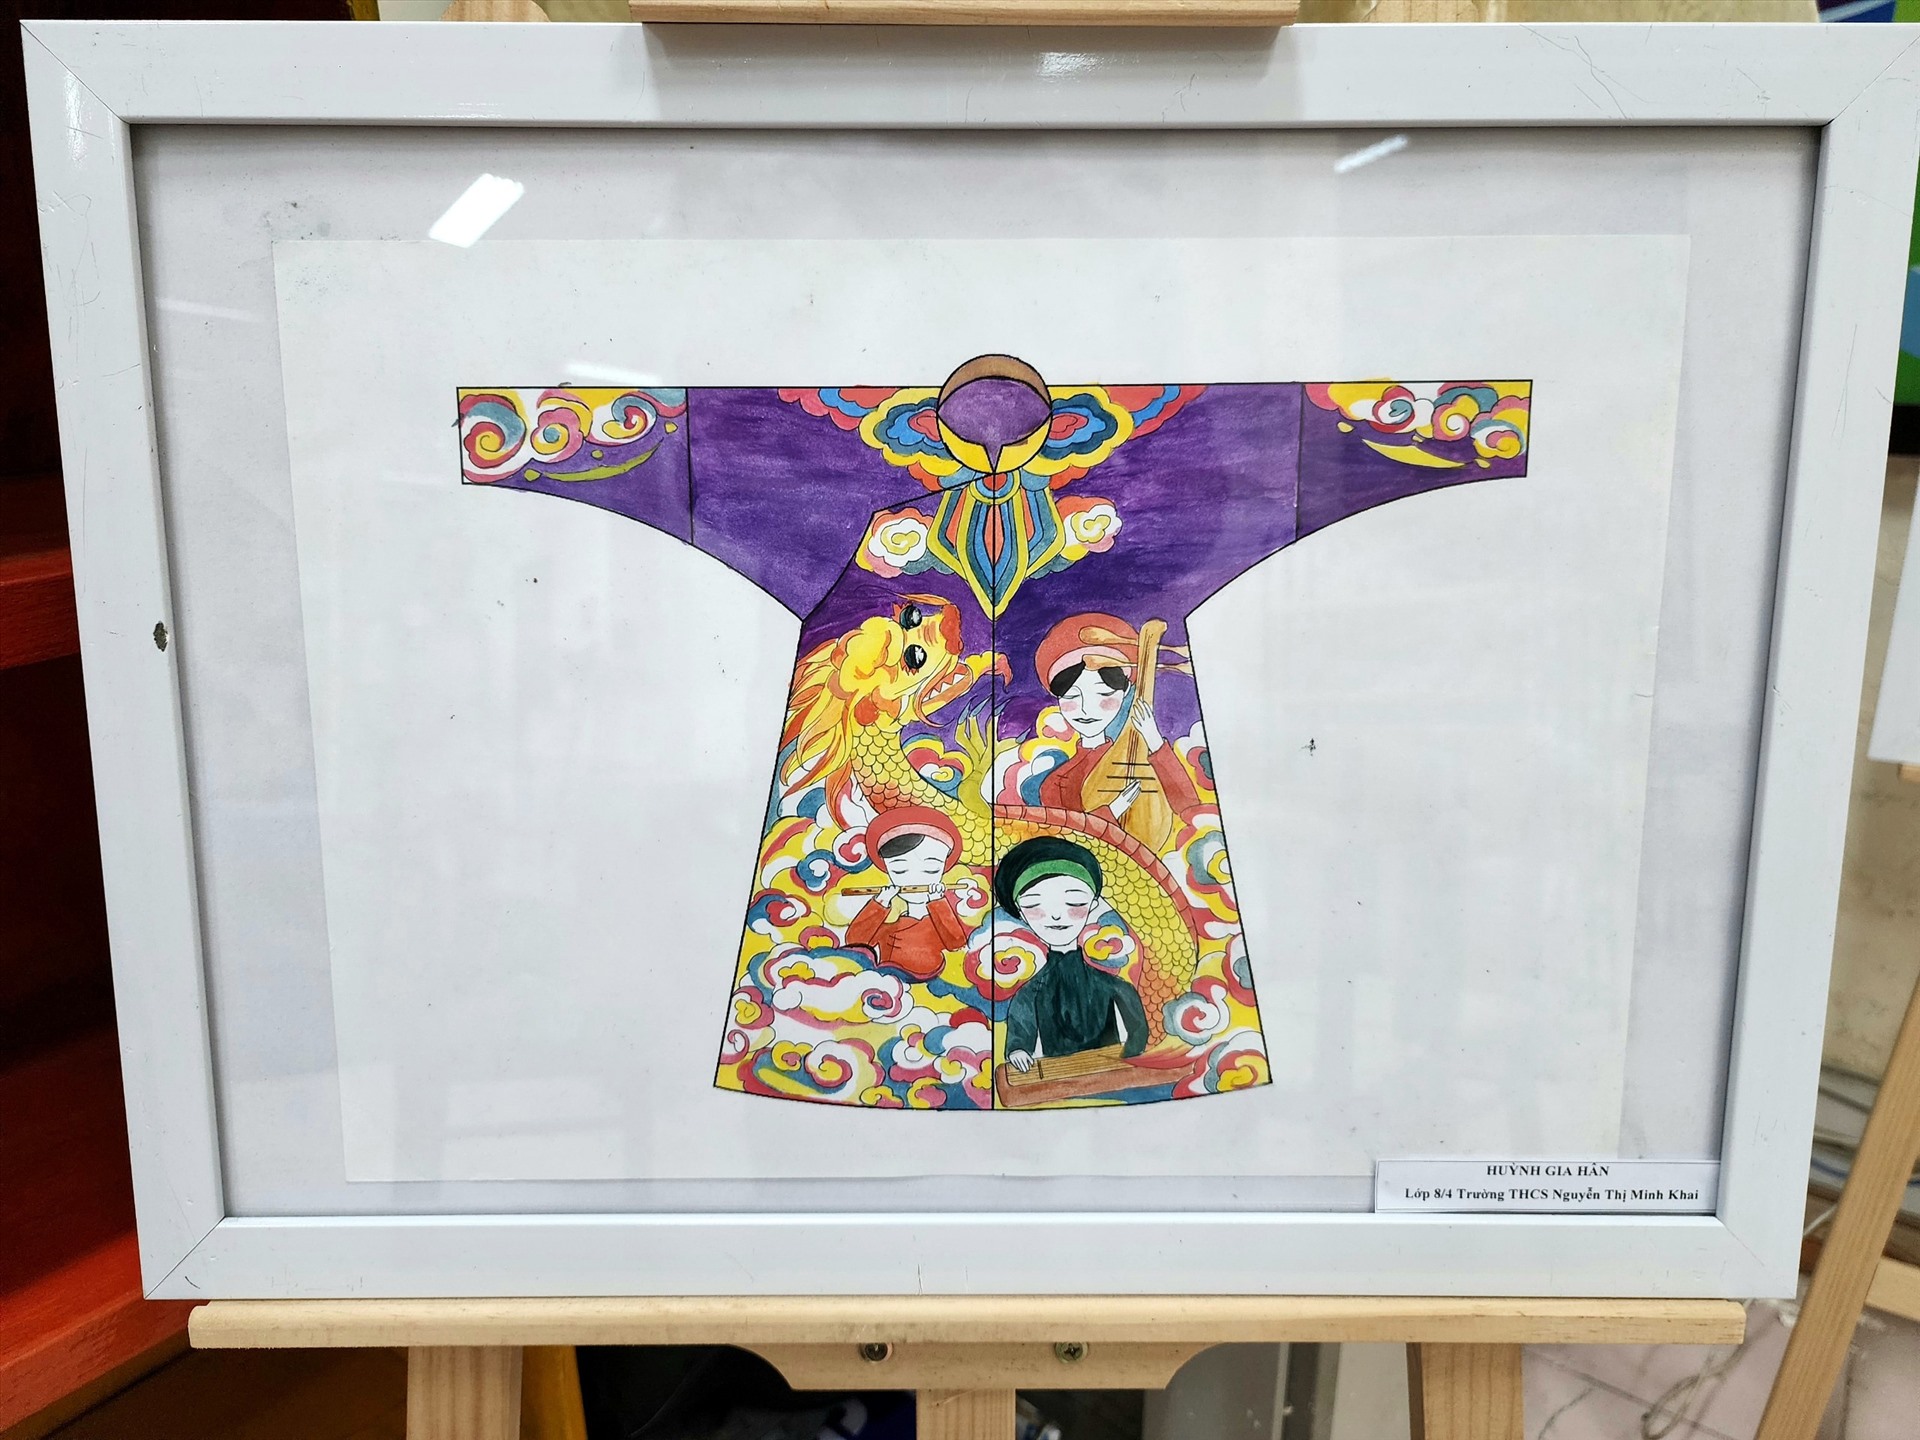 Những tác phẩm tham dự giải sẽ được sử dụng để quảng bá, biểu diễn và trưng bày trong các sự kiện, hoạt động do Thư viện Tổng hợp tỉnh Thừa Thiên Huế tổ chức.